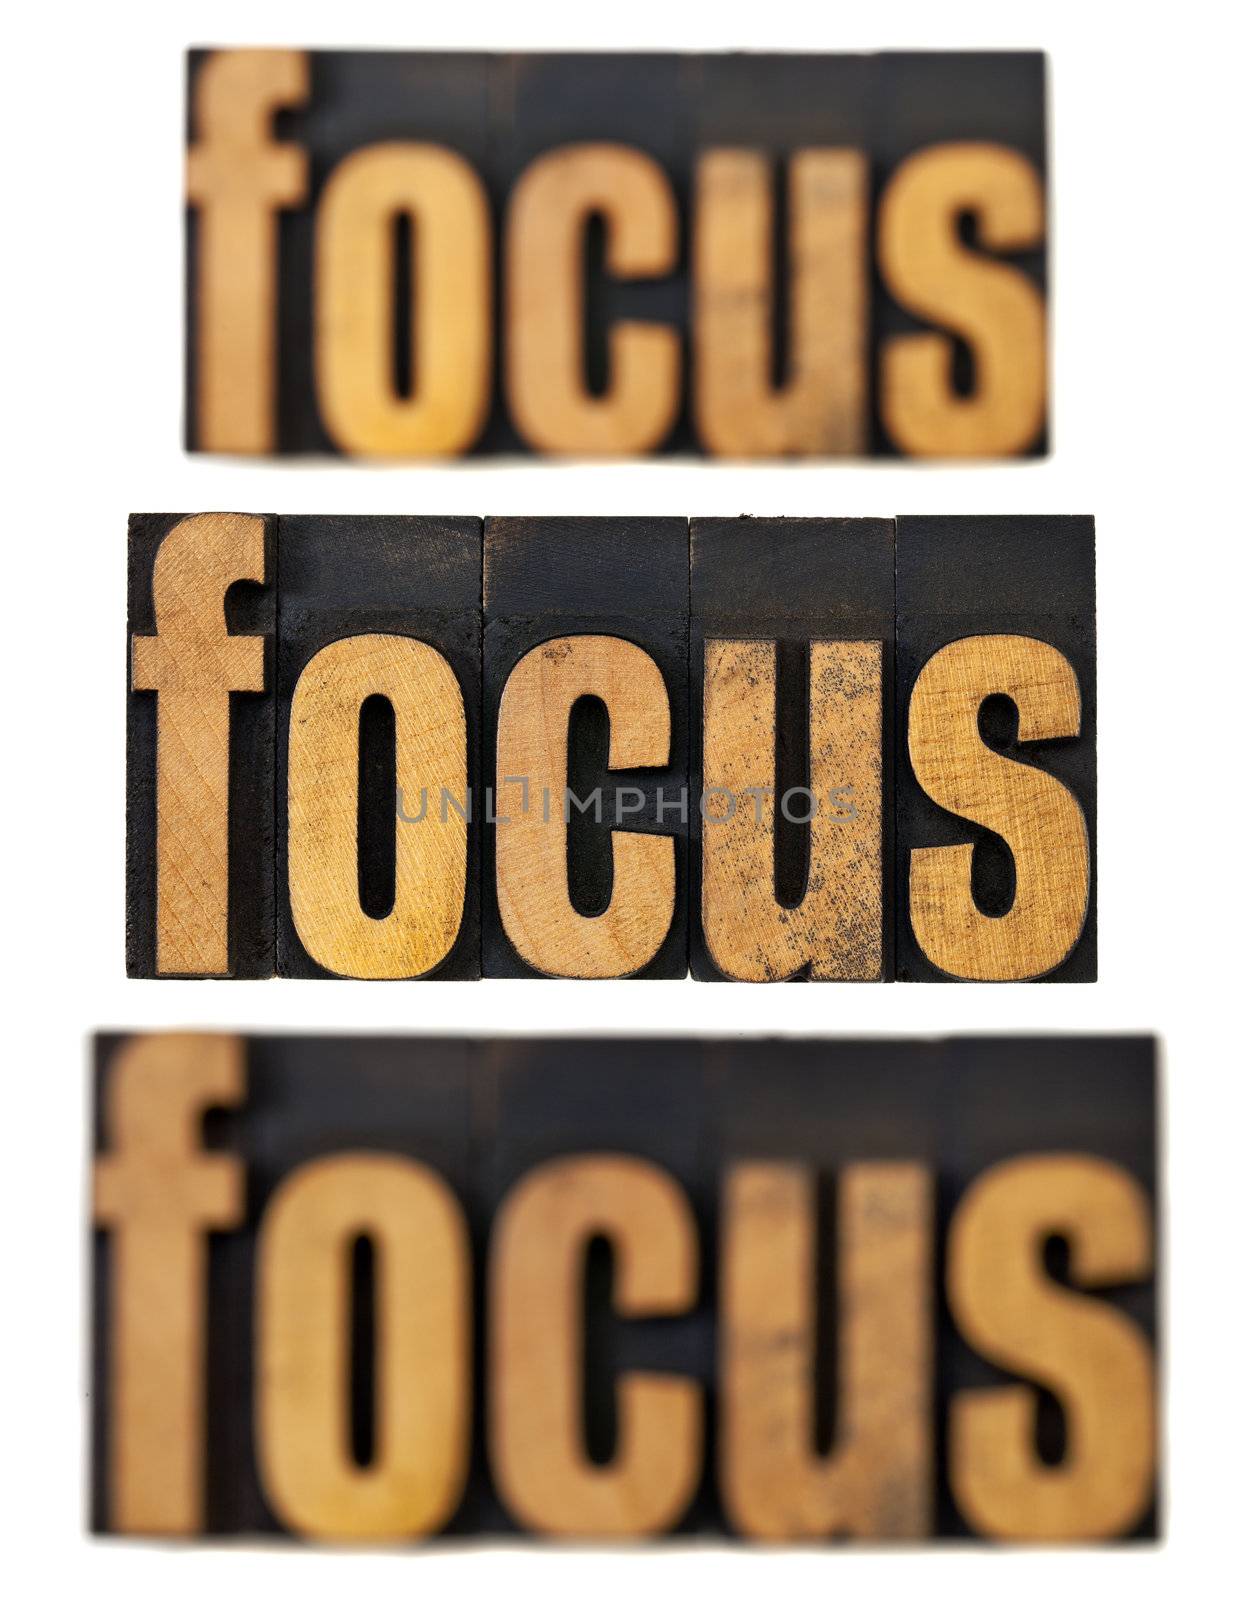 focus concept in wood type by PixelsAway